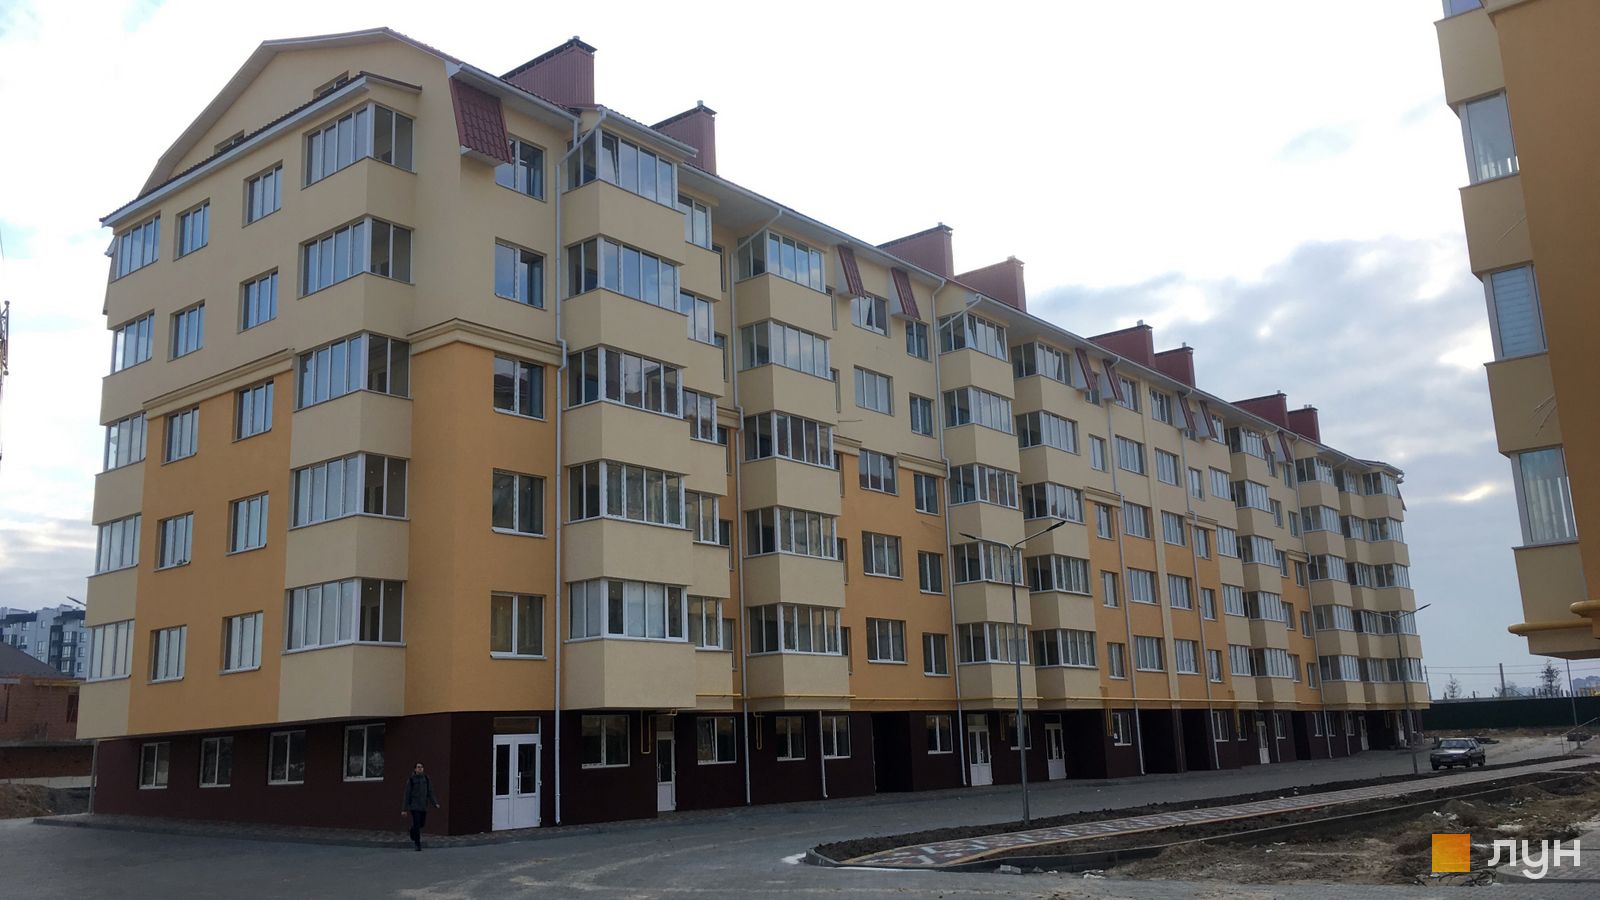 Моніторинг будівництва ЖК Київський маєток - Ракурс 10, листопад 2019